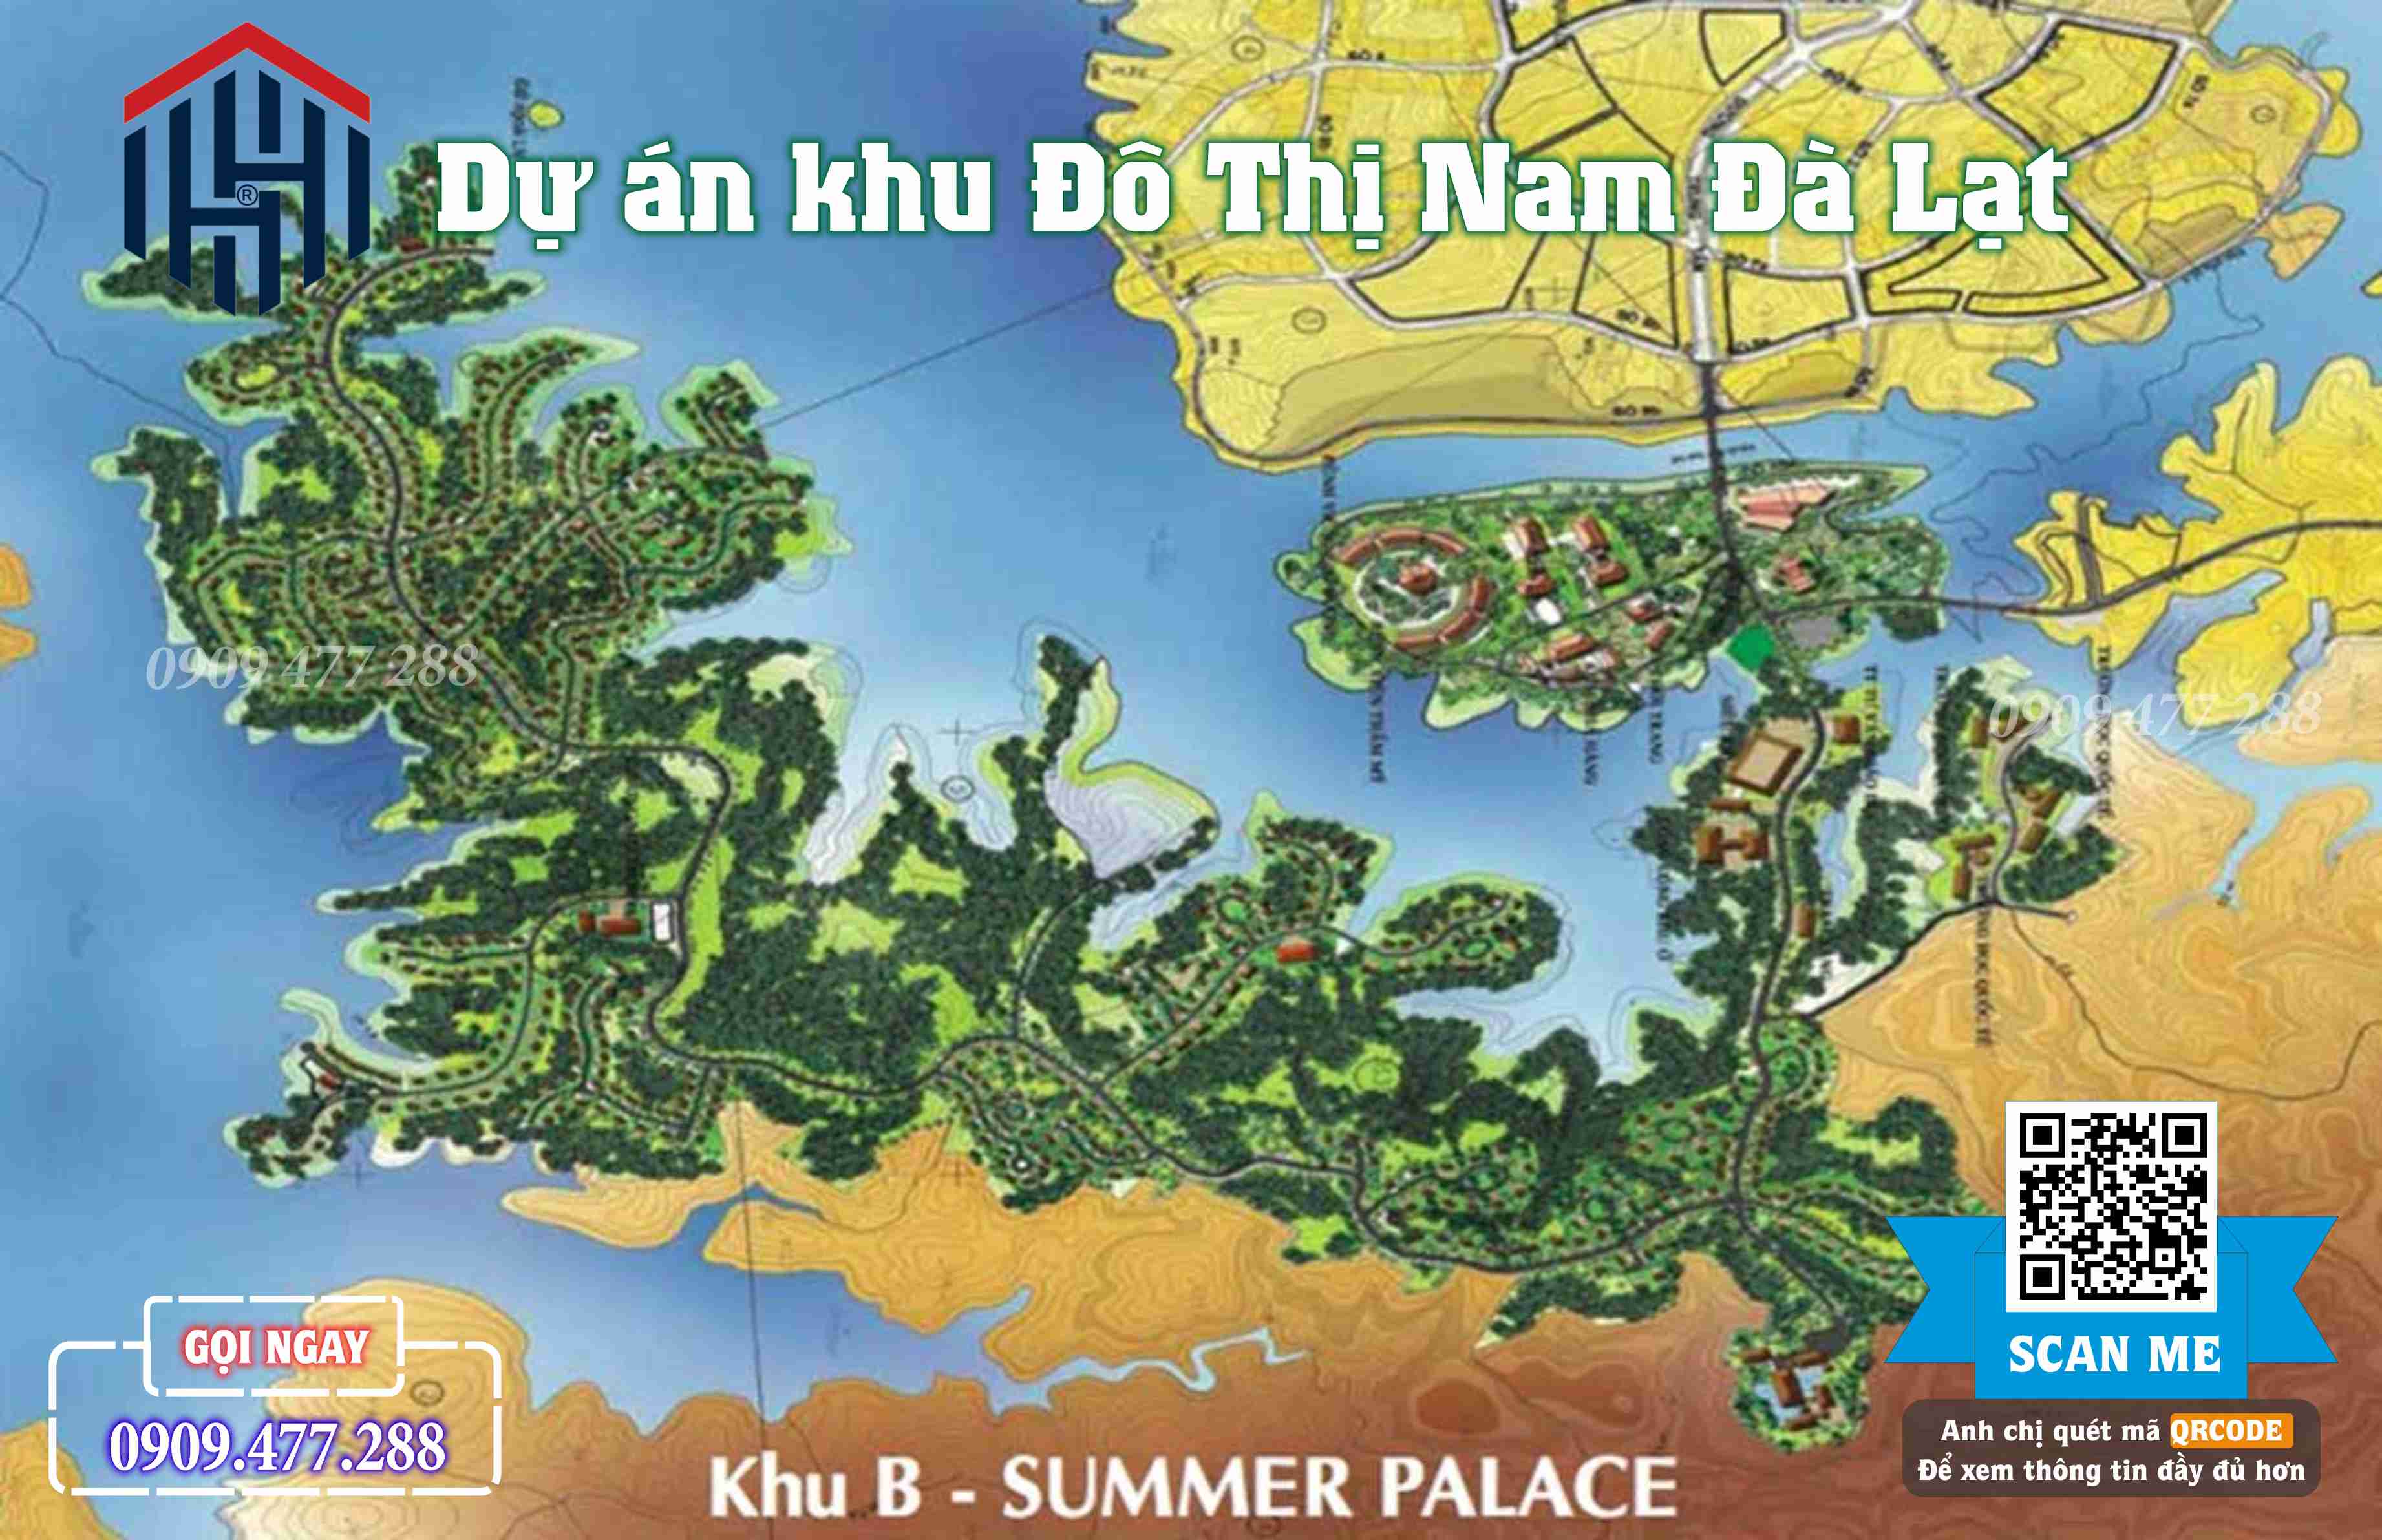 Khu B Summer Palace Khu đô thị Nam Đà Lạt